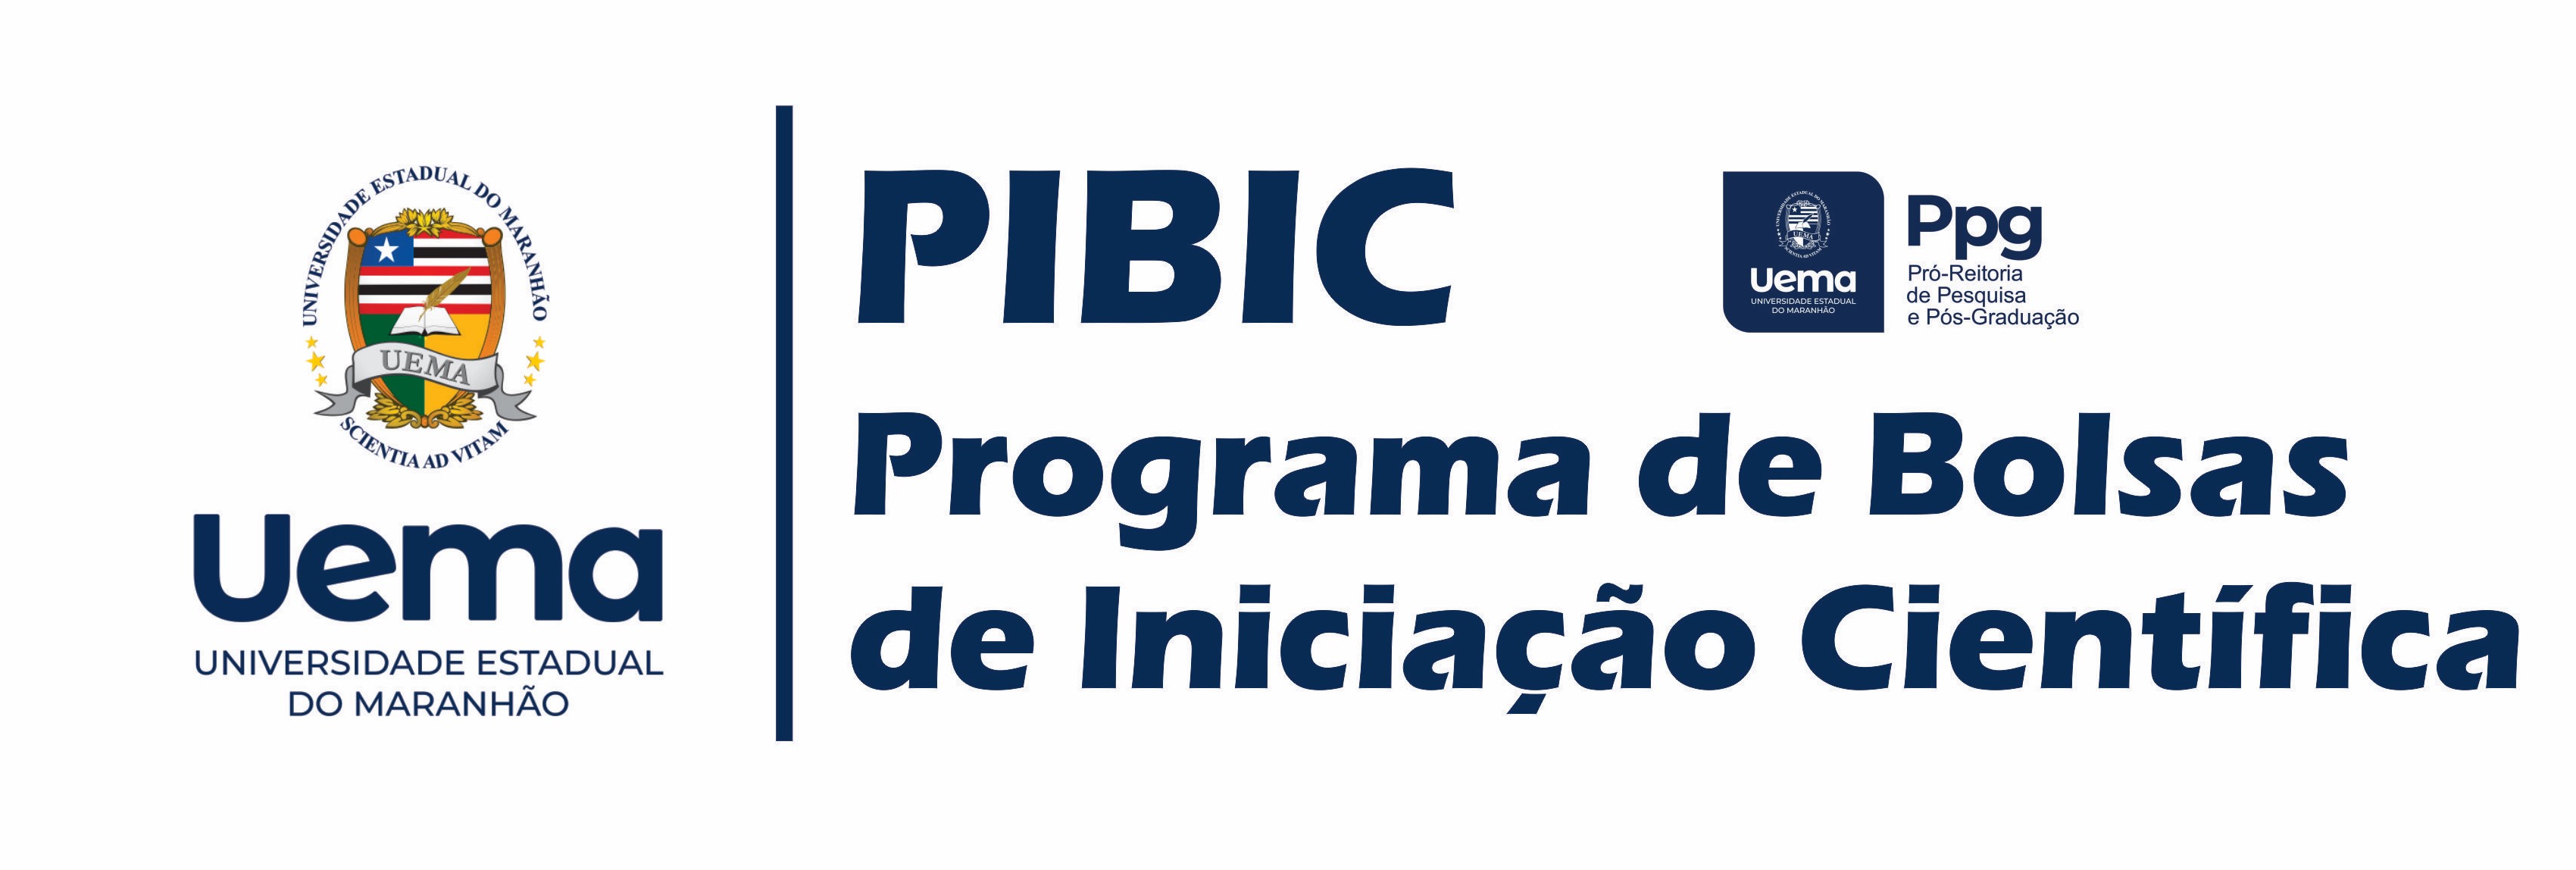 Cópia_de_segurança_de_logo-piBIC-corel1